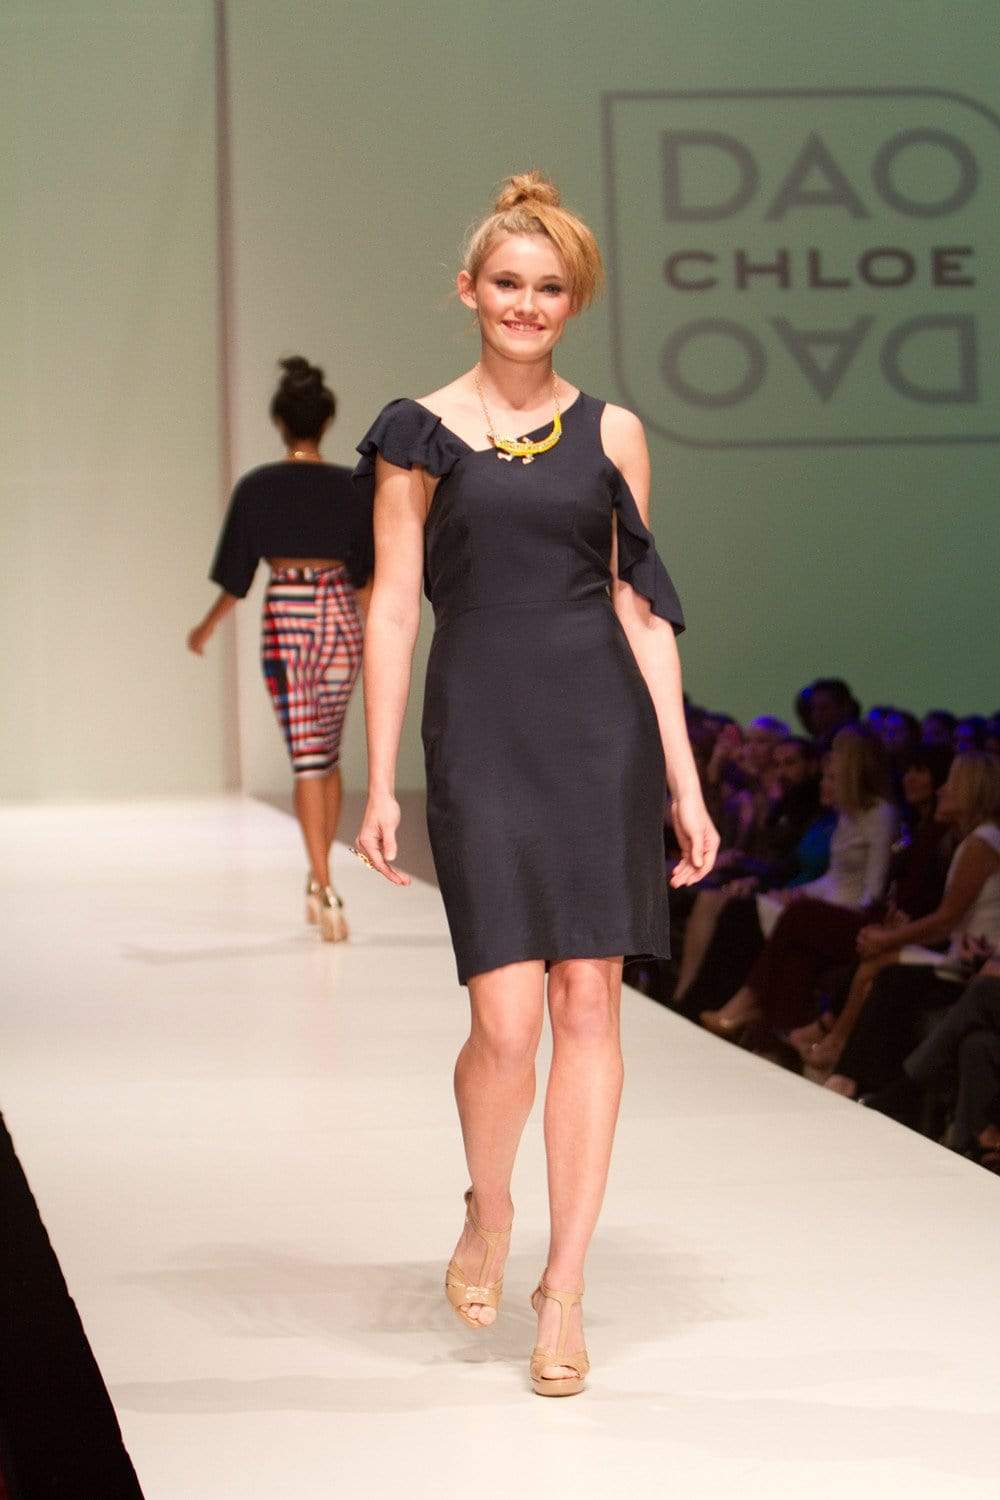 Poppy Dress - Chloe Dao